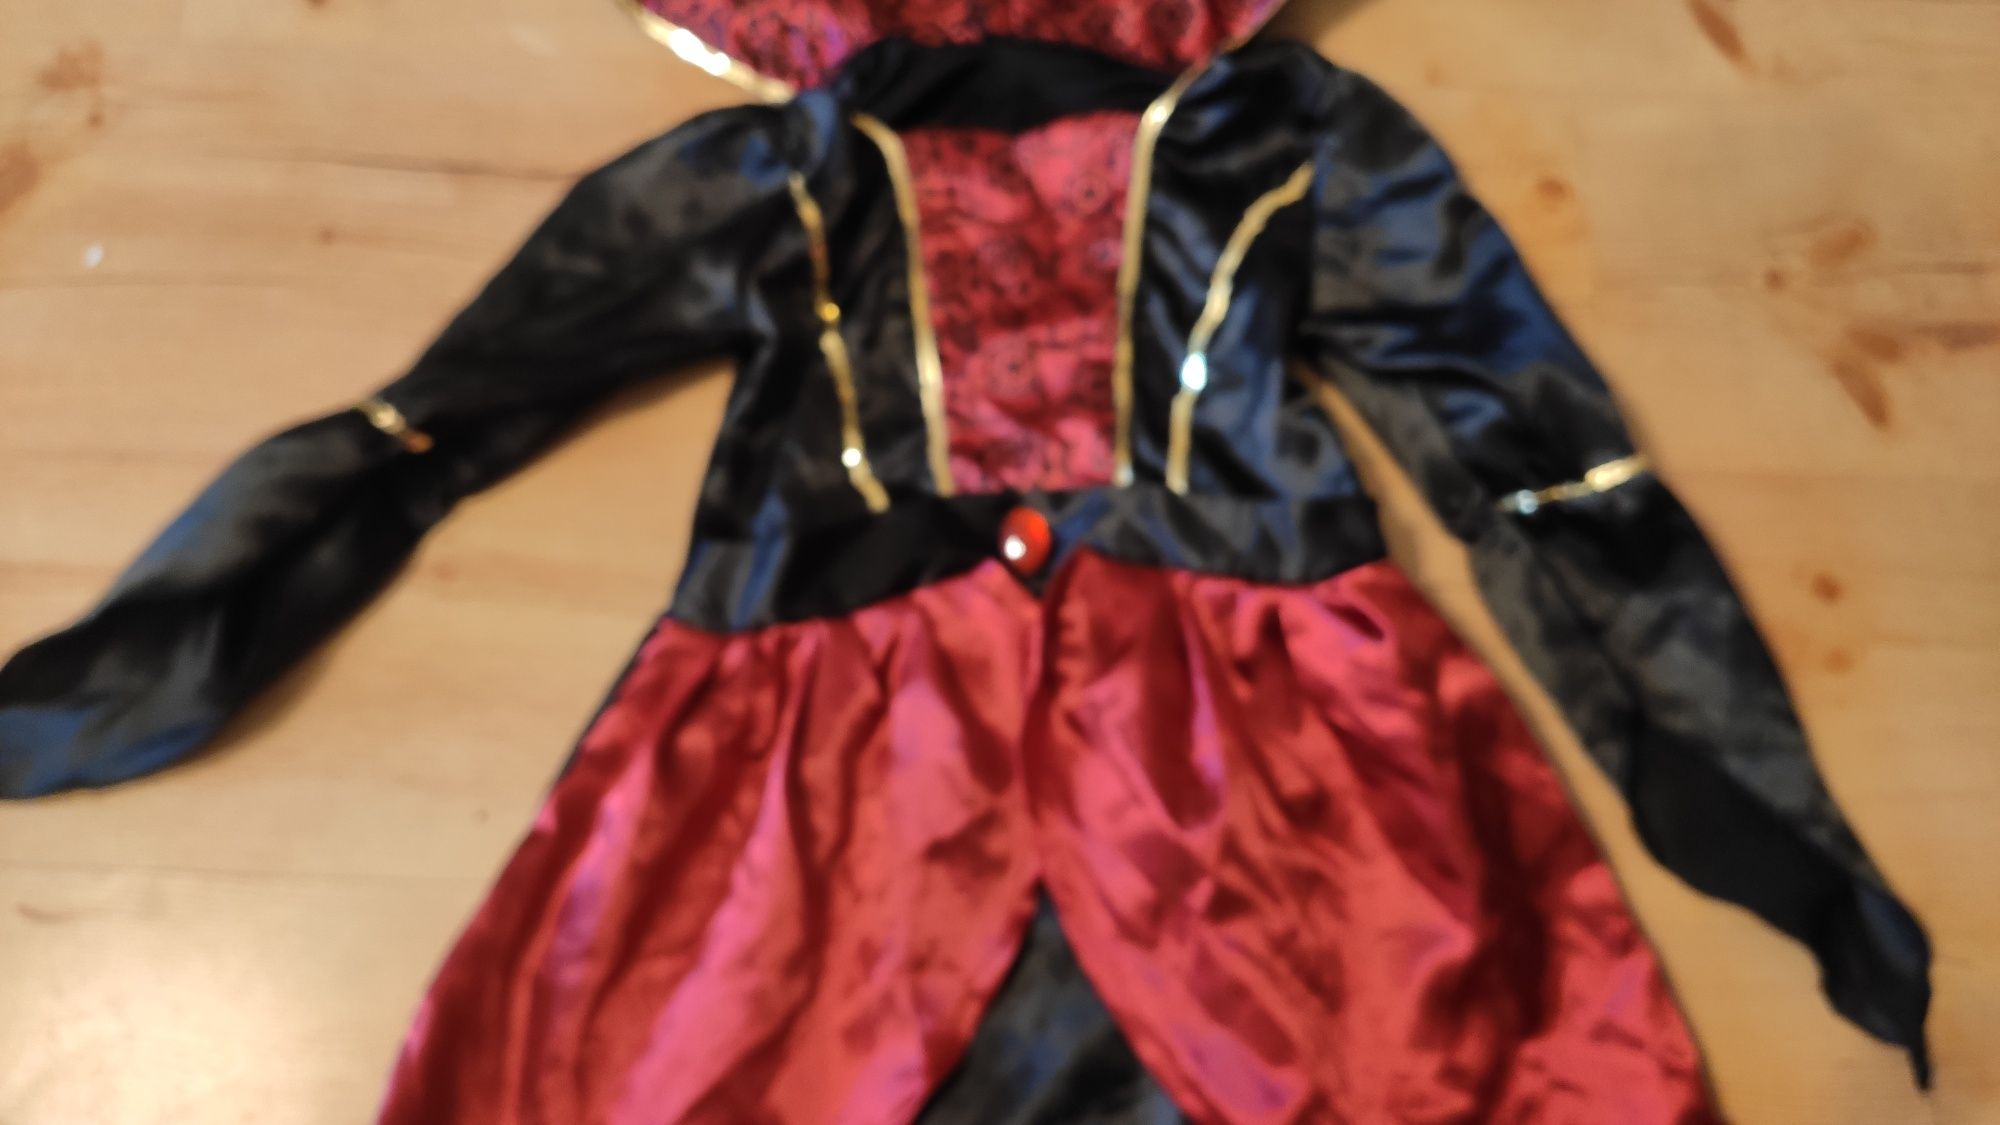 Czarownica czarodziejka strój sukienka przebranie bal halloween 116